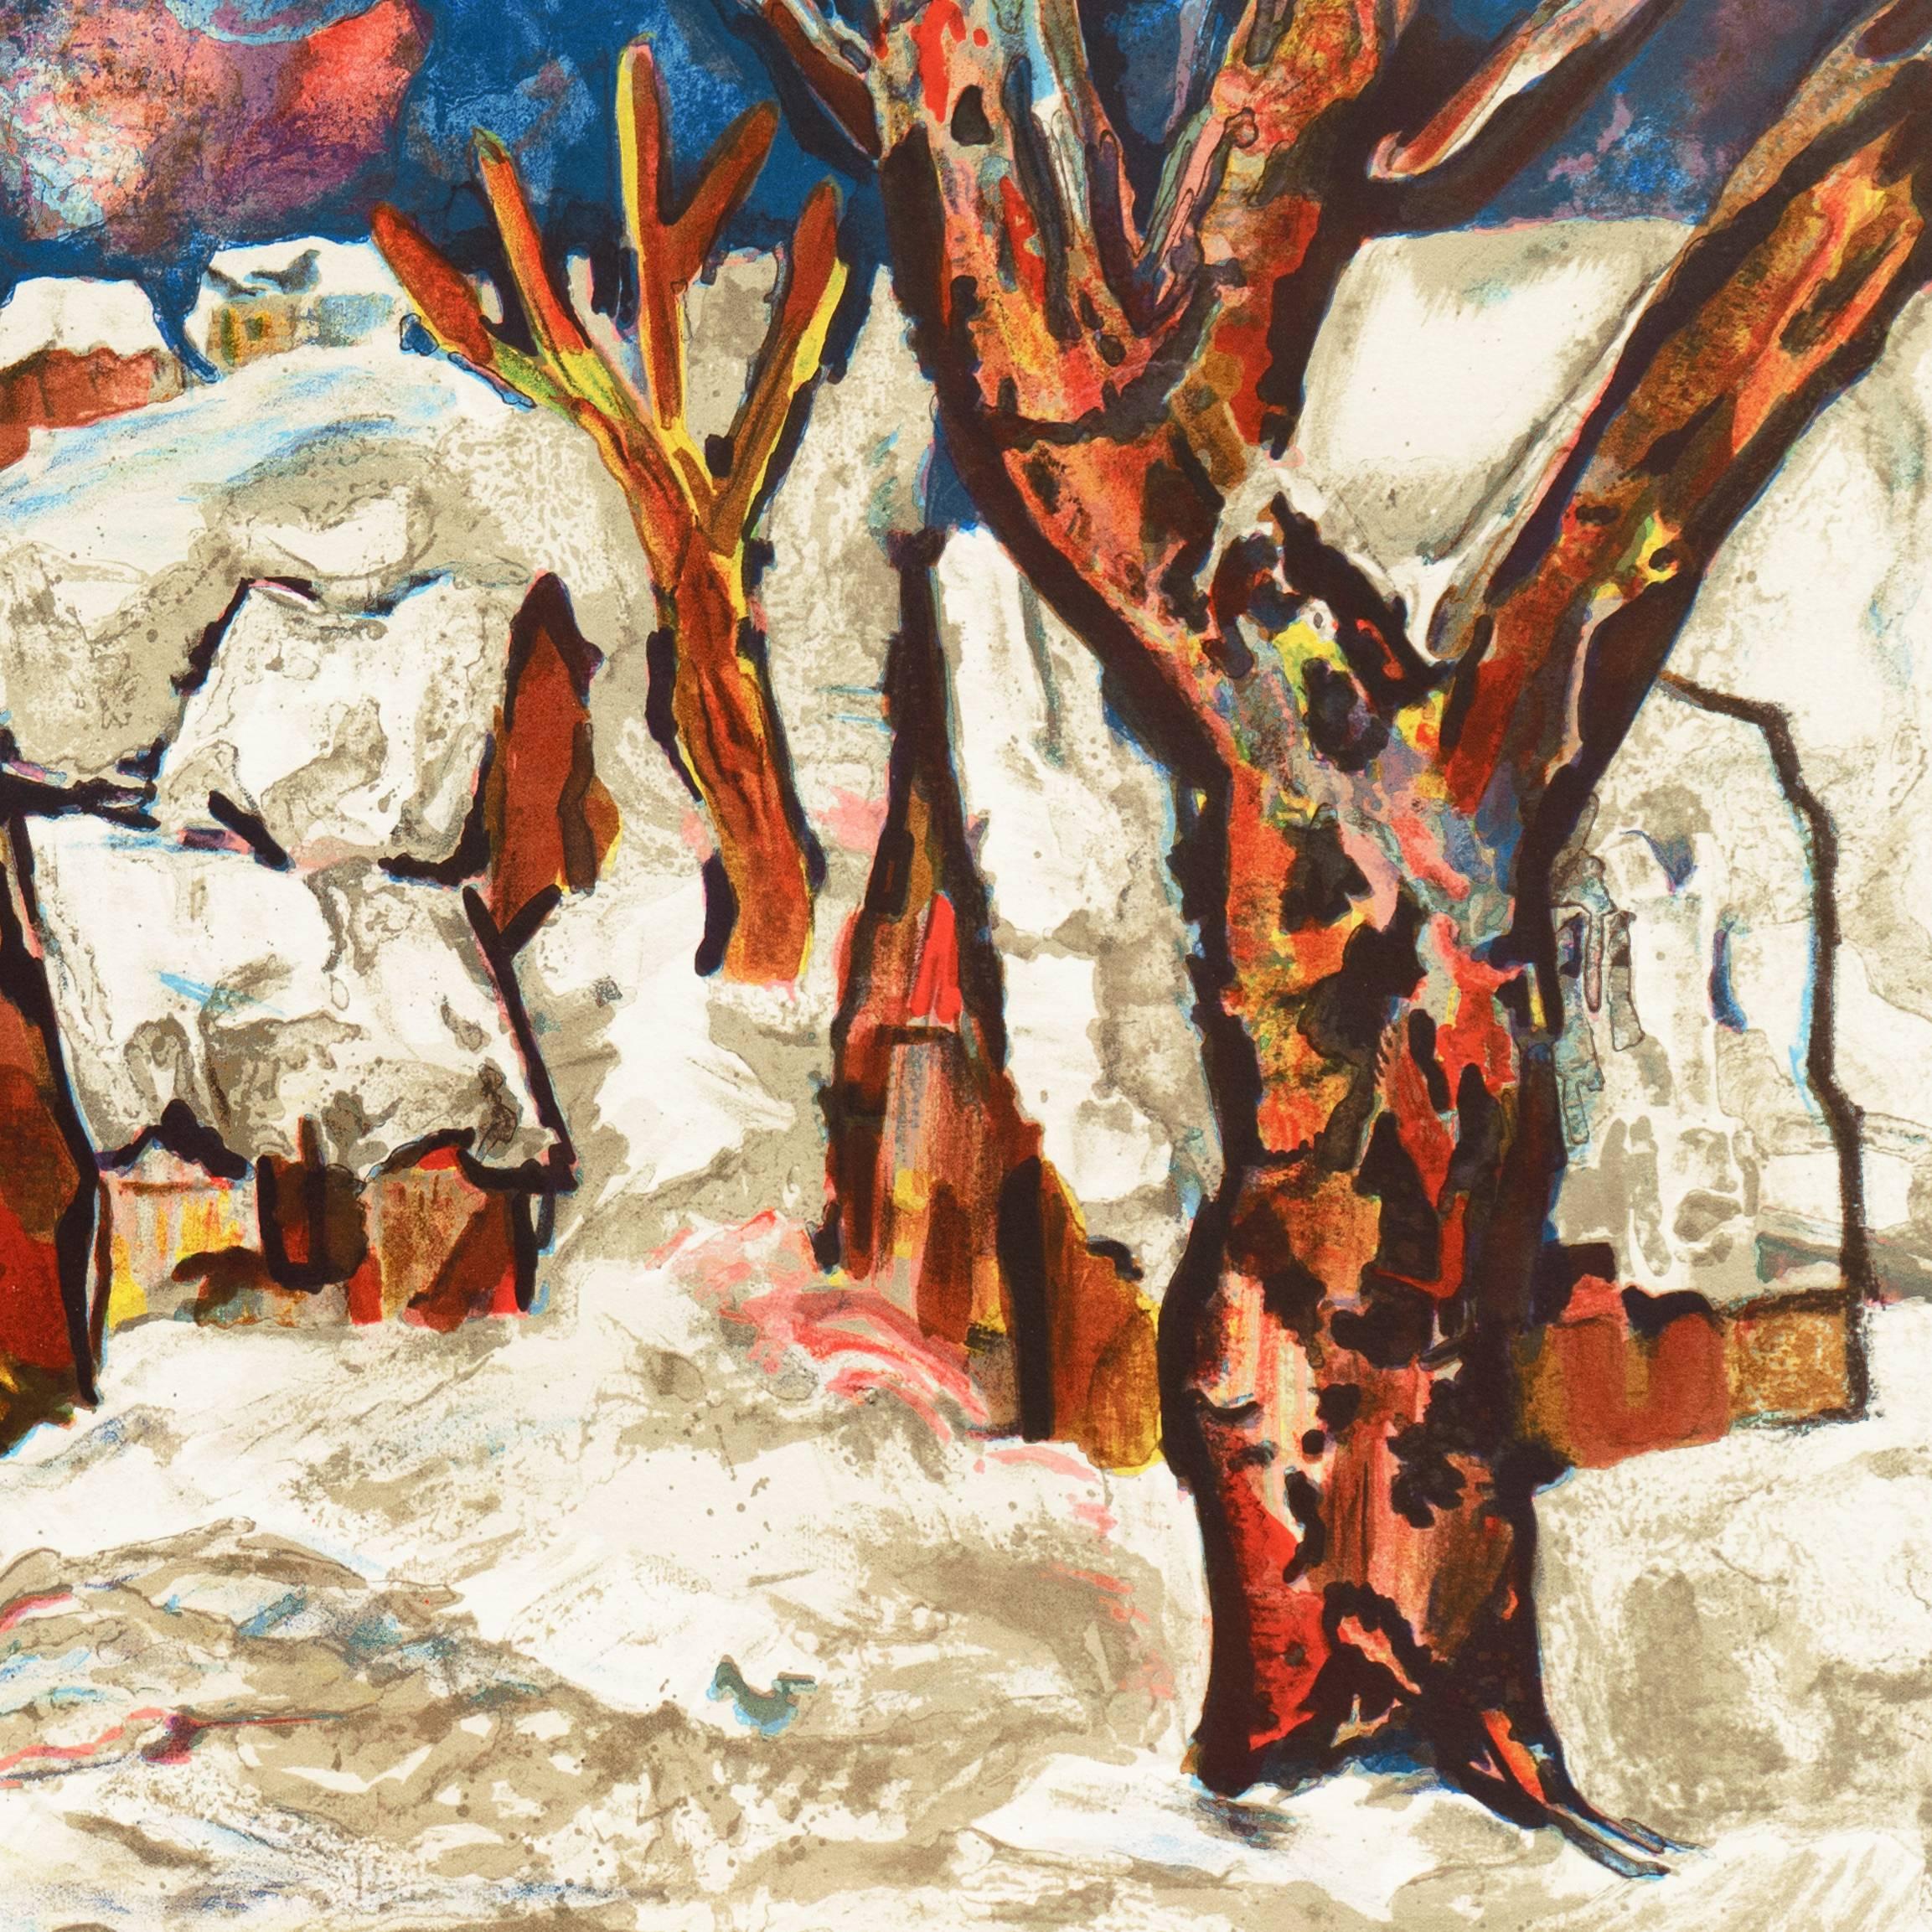 Un paysage substantiel, lithographié sur pierre, montrant une vue de maisons rustiques avec des toits à pics élevés, nichées entre des arbres et couvertes de neige, avec une église et un village au-delà et un ciel bleu cobalt au-dessus.

Signé en